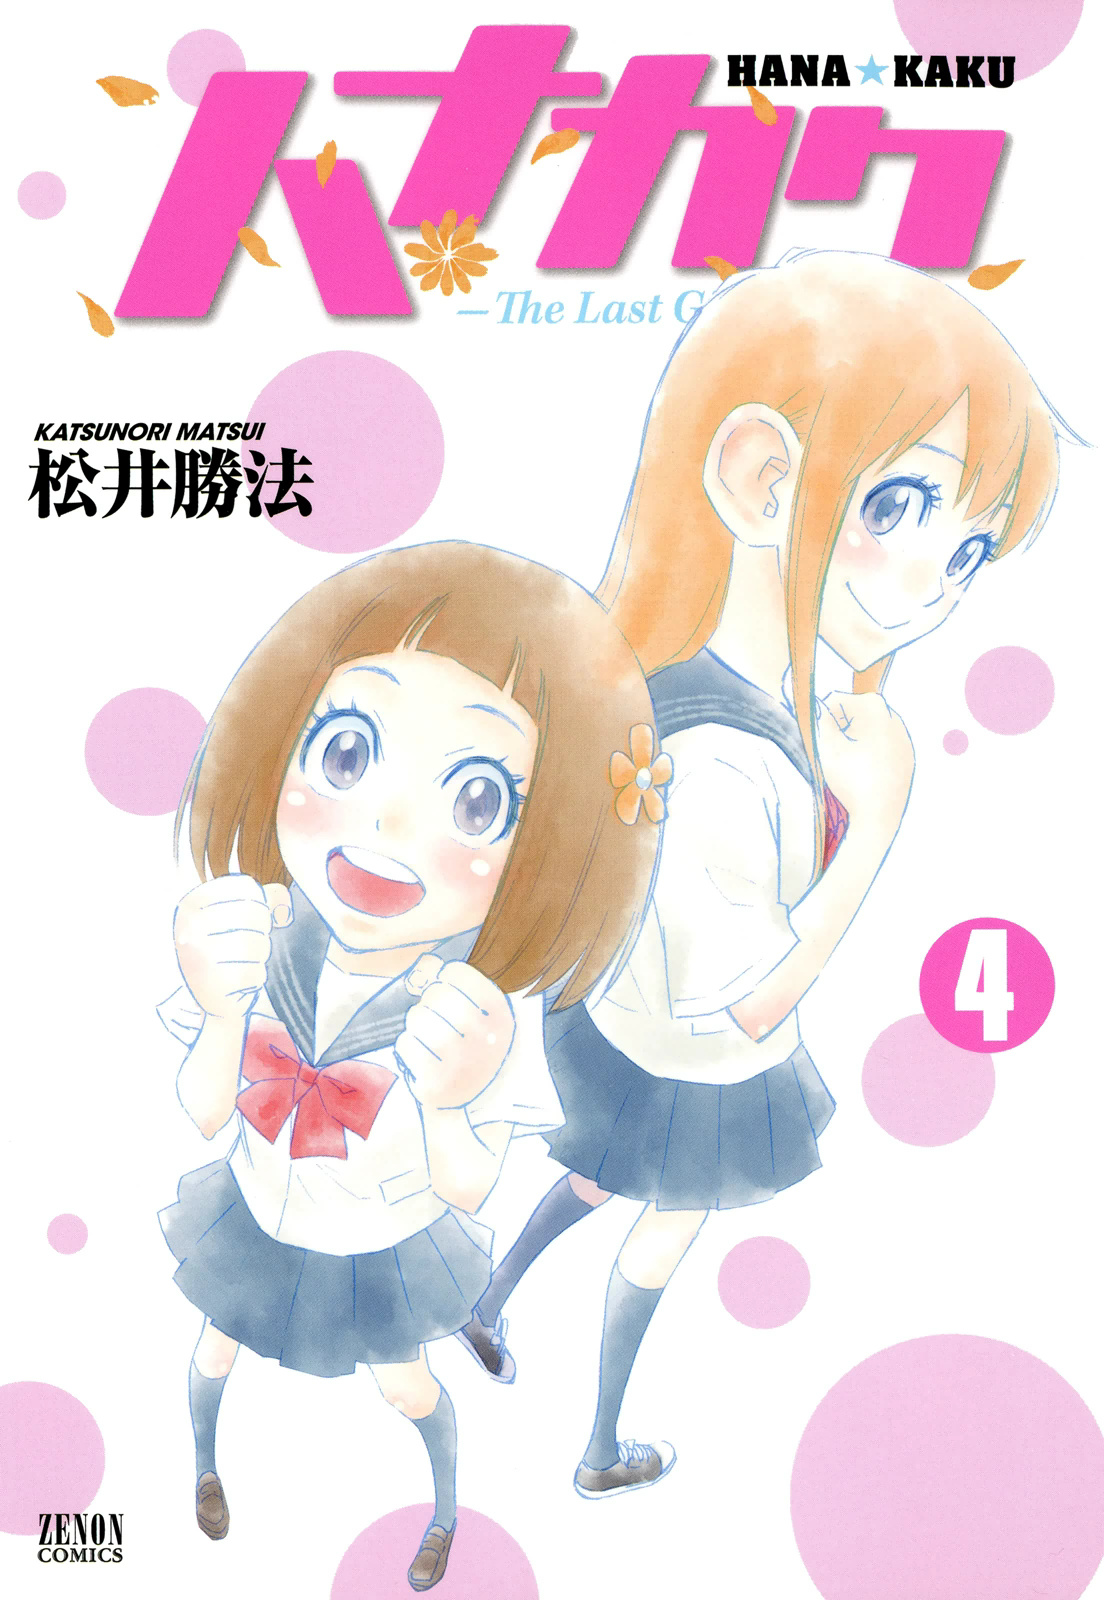 Hanakaku - The Last Girl Standing - chapter 17 - #1